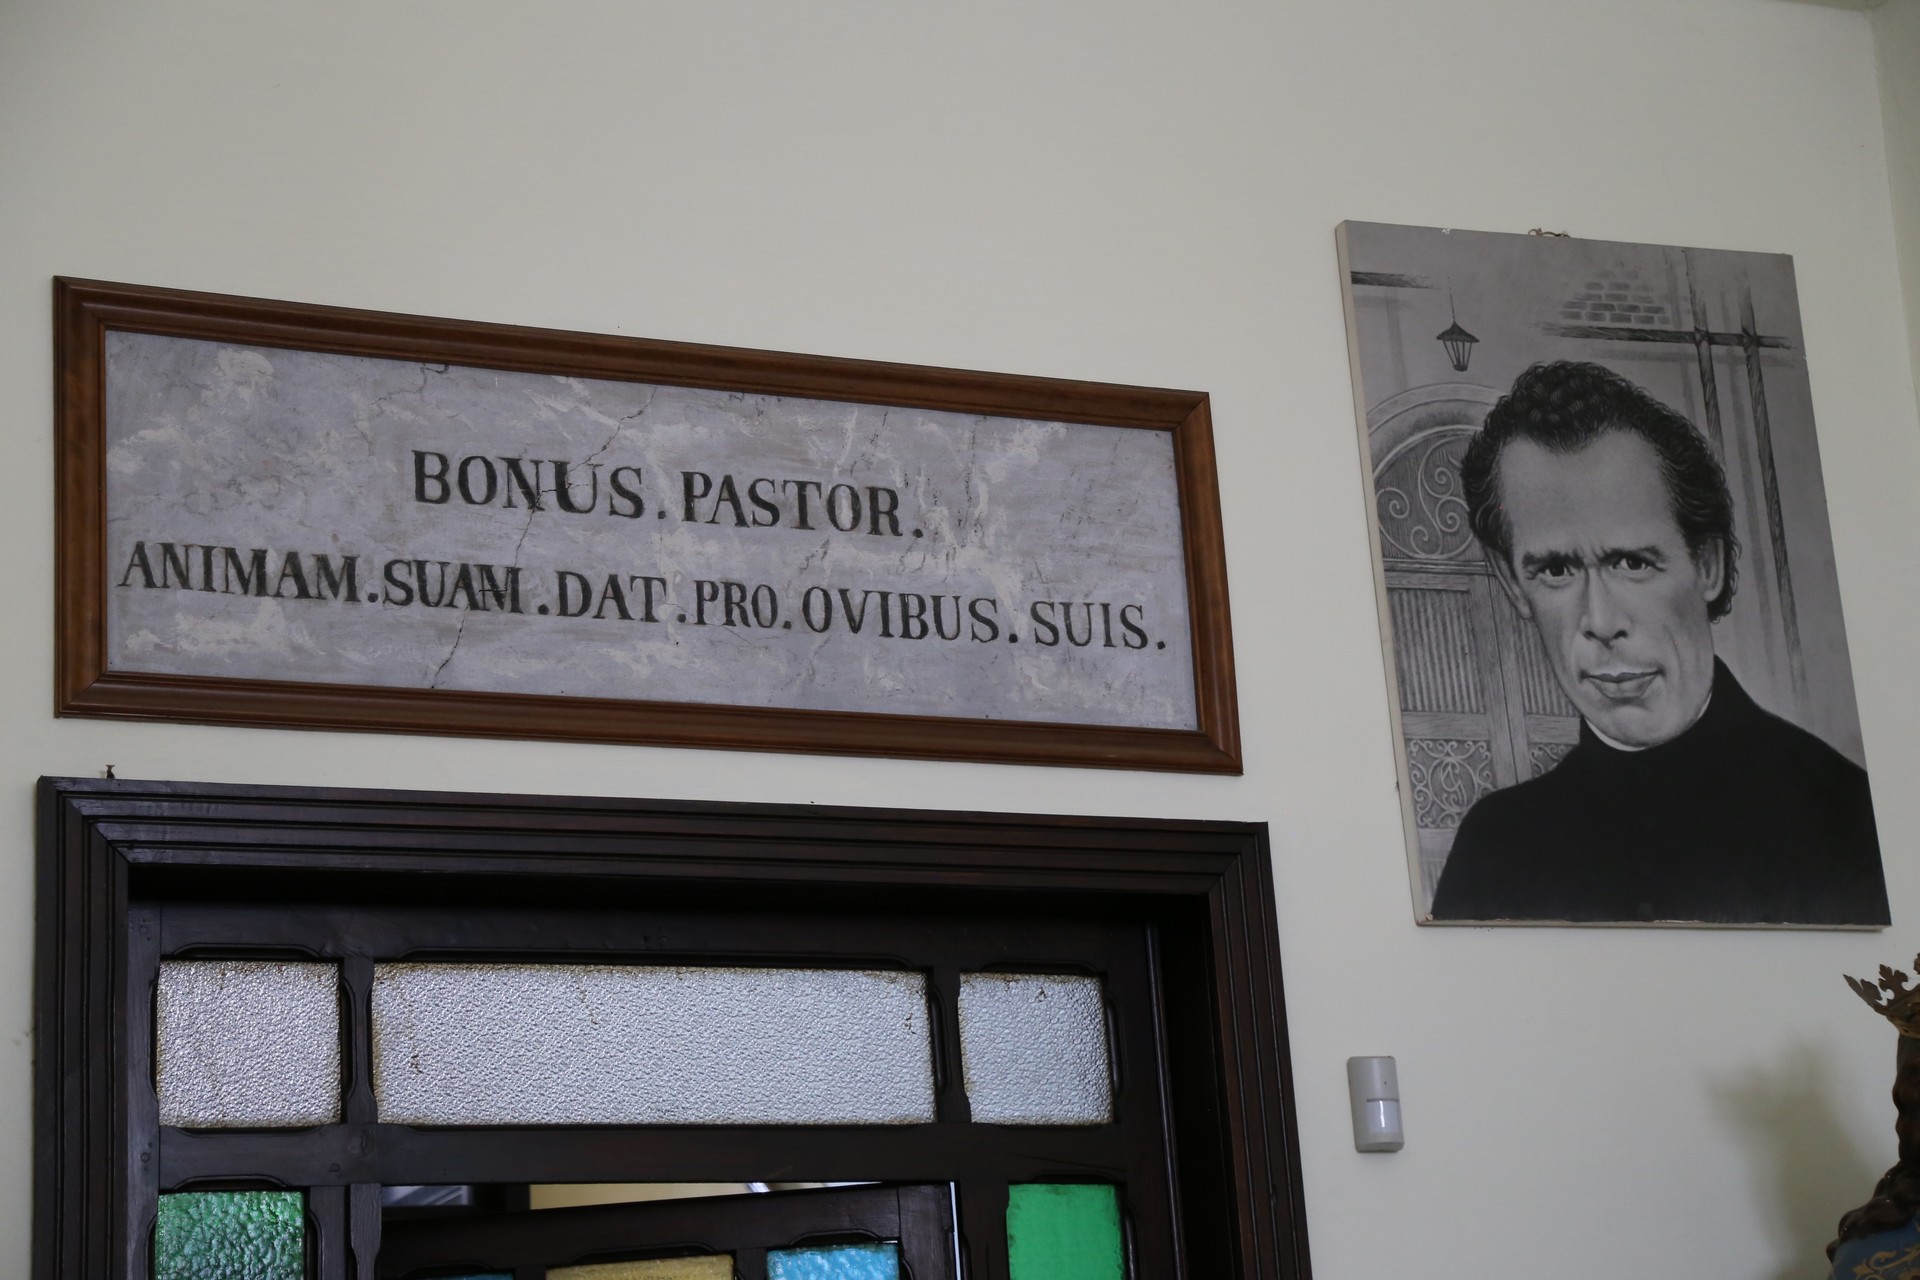 Bonus pastor